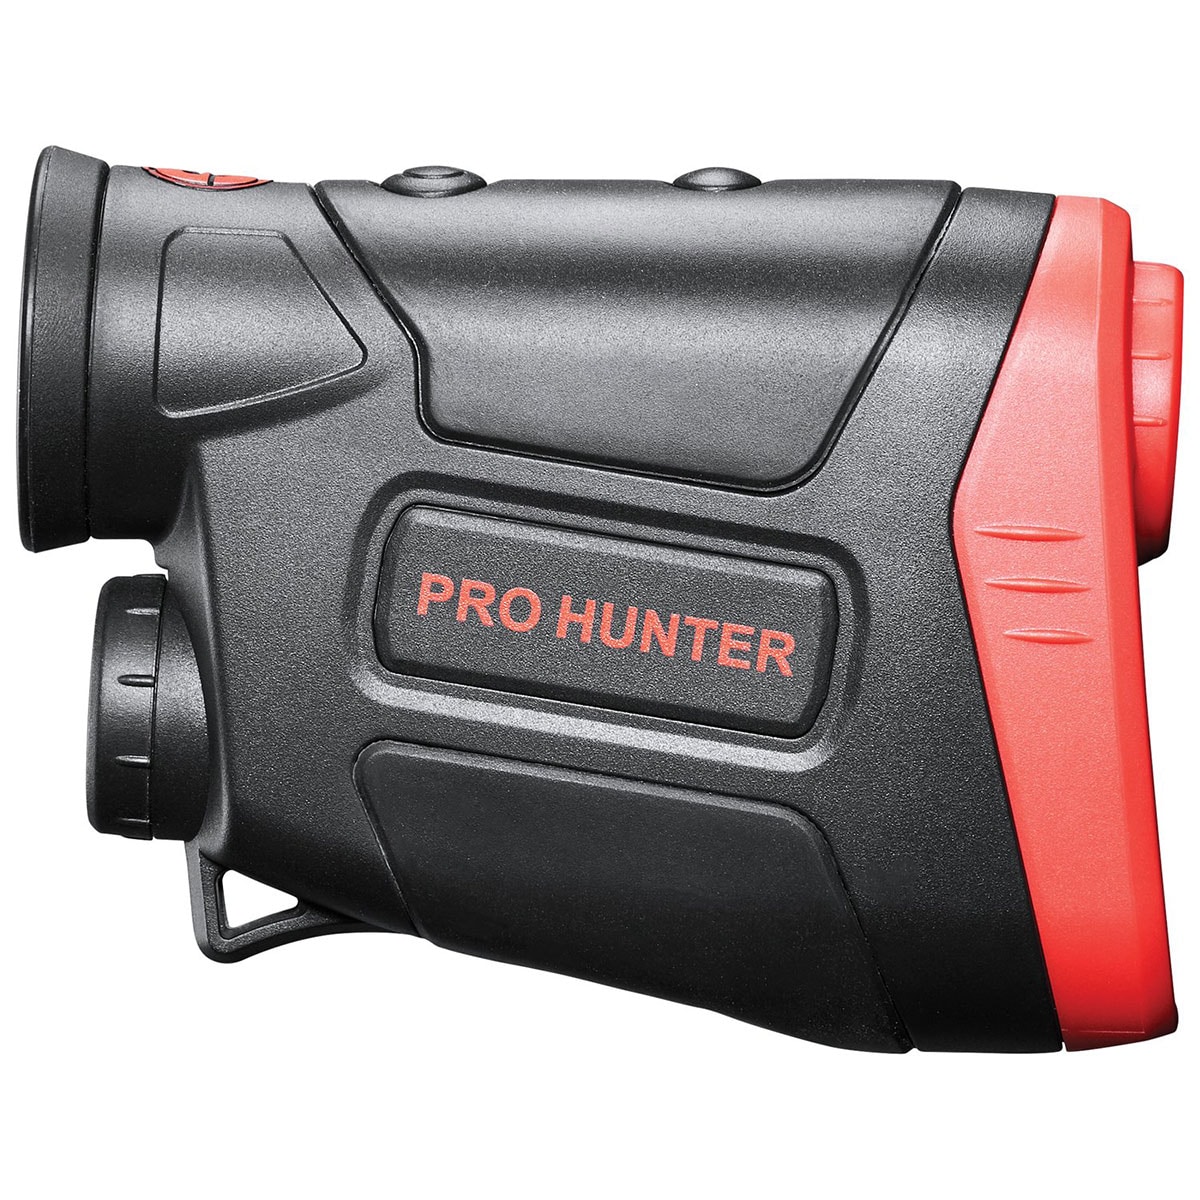 Dalmierz laserowy Simmons Pro Hunter 750 6x24